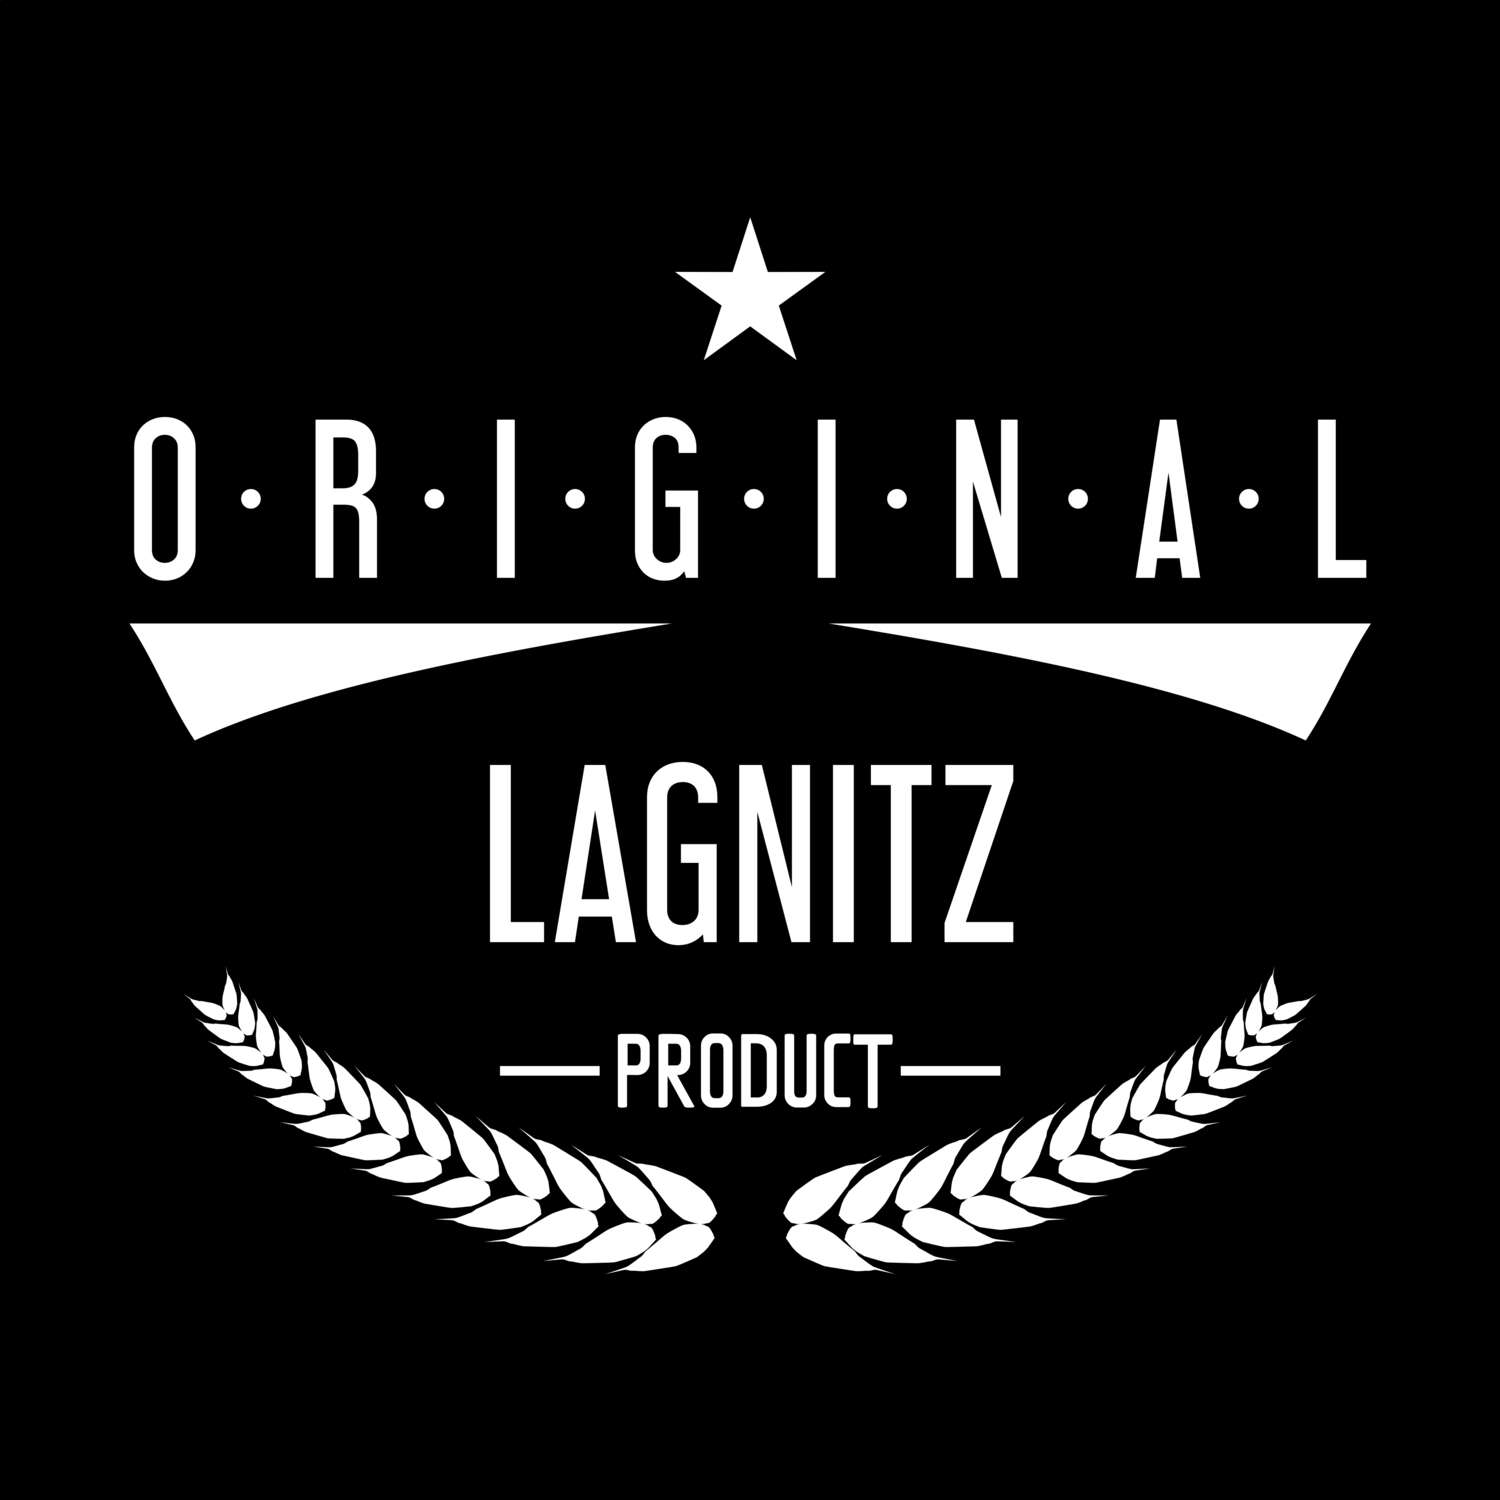 Lagnitz T-Shirt »Original Product«